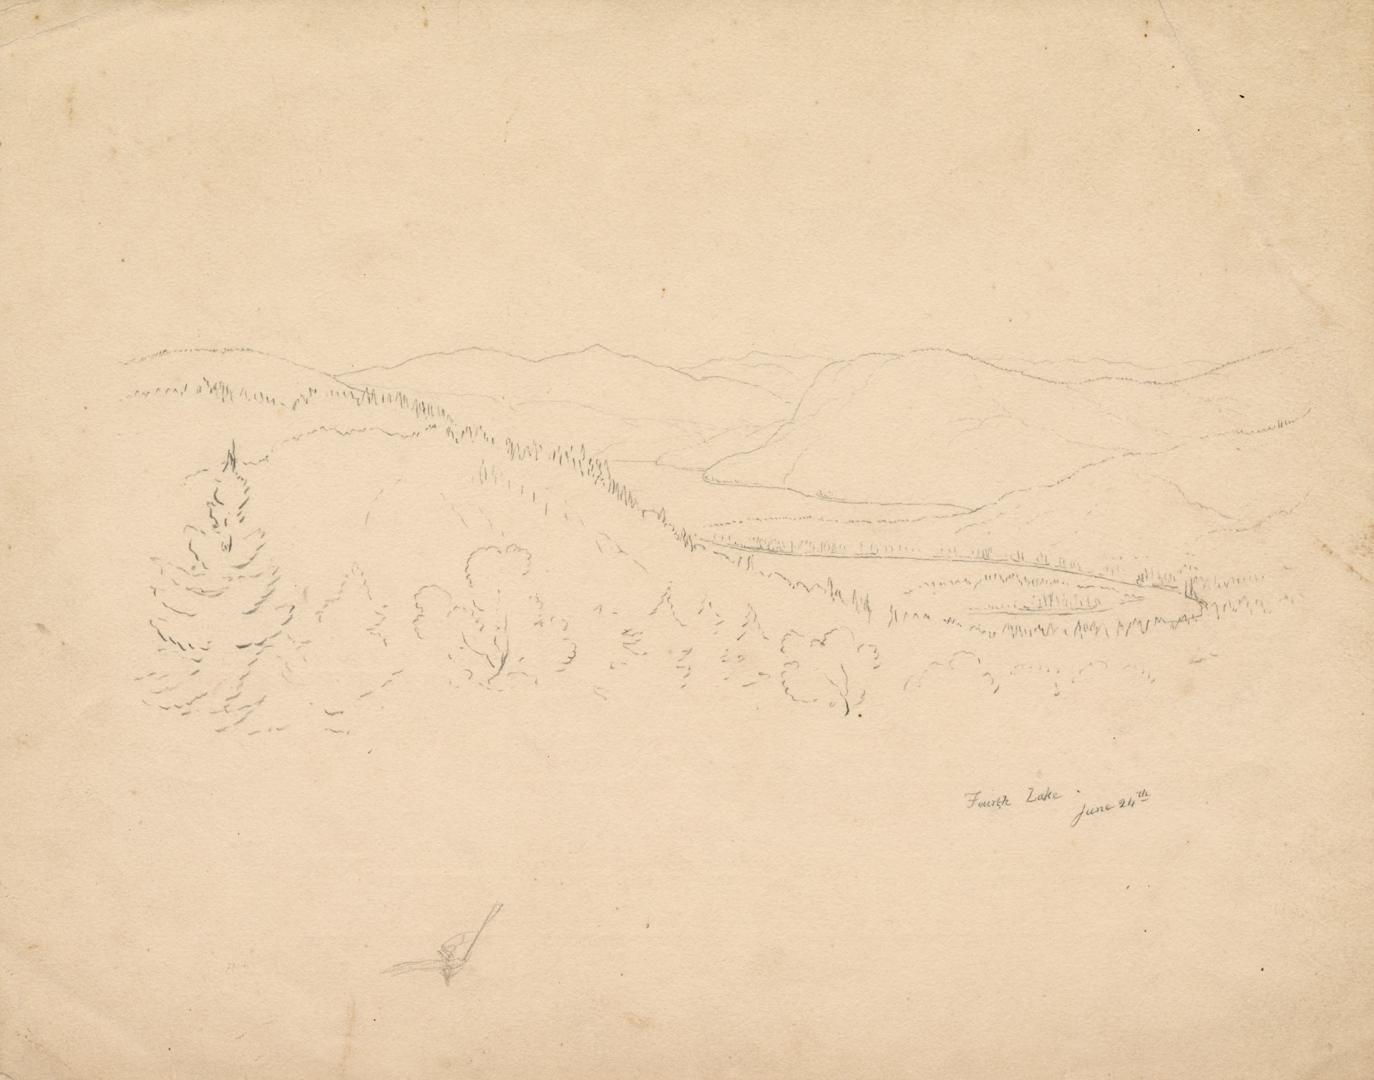 Fourth lake, Cold-Water River [Rivière à l'Eau Dorée], Labrador Peninsula expedition, 1861